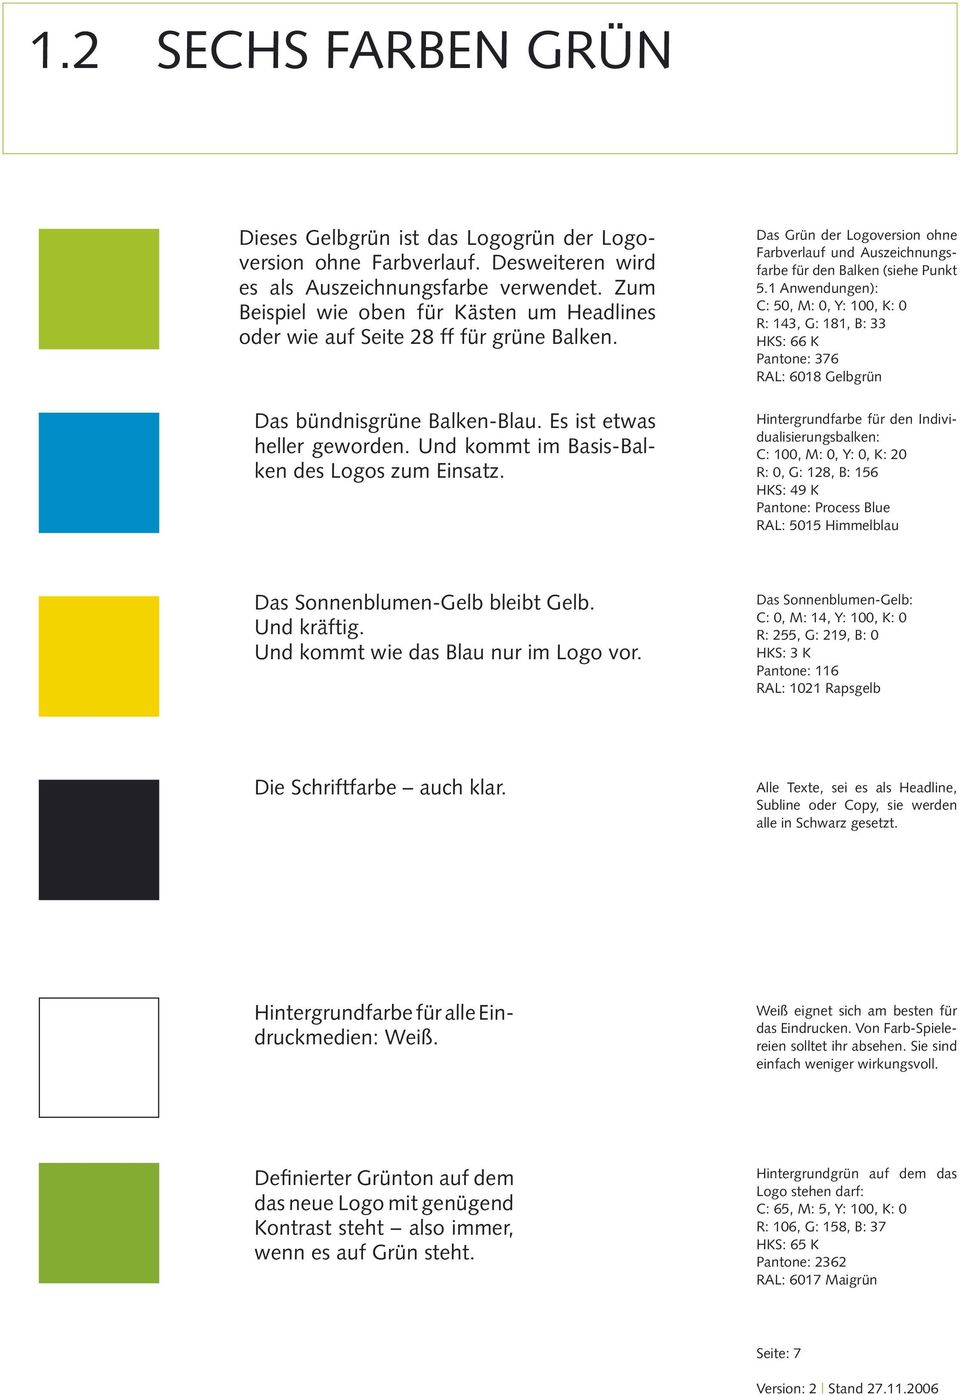 Das Grün der Logoversion ohne Farbverlauf und Auszeichnungsfarbe für den Balken (siehe Punkt 5.